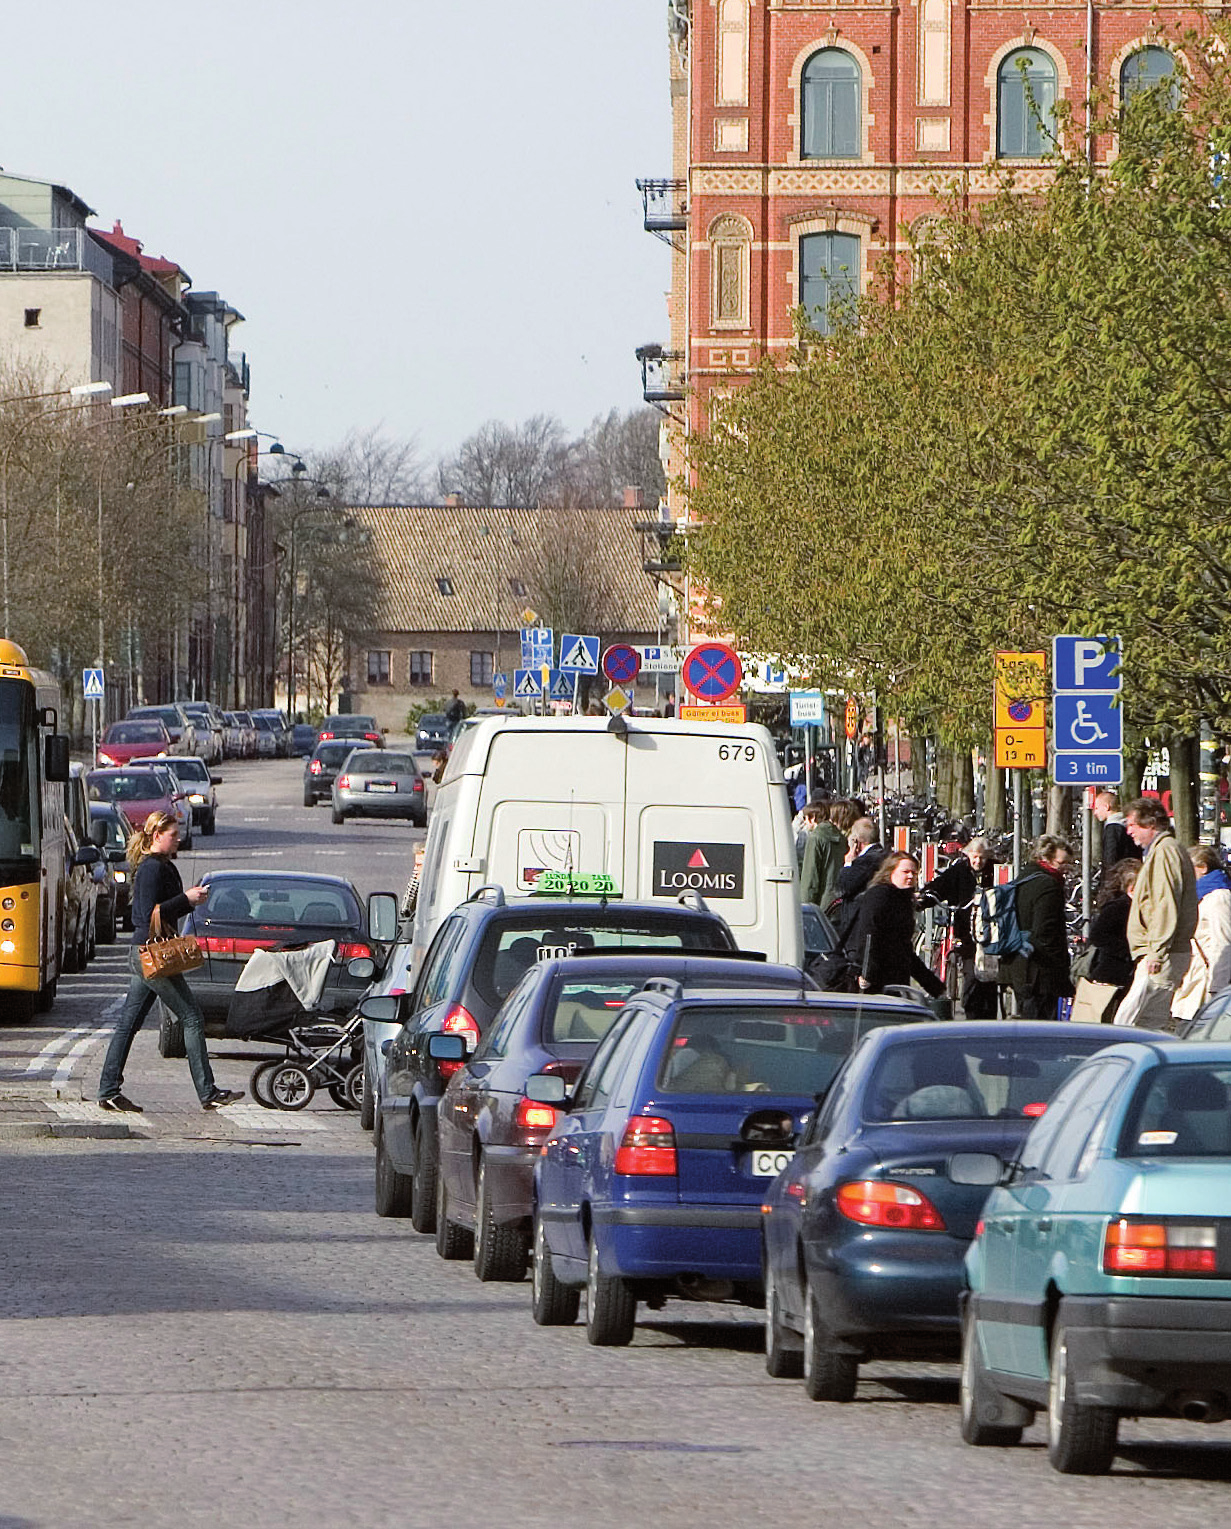 Gör LundaMaTs II att vi når vi målen? Om projektförslagen och reformerna genomförs, kommer det att leda transportsystemet i Lunds kommun i en hållbar riktning.